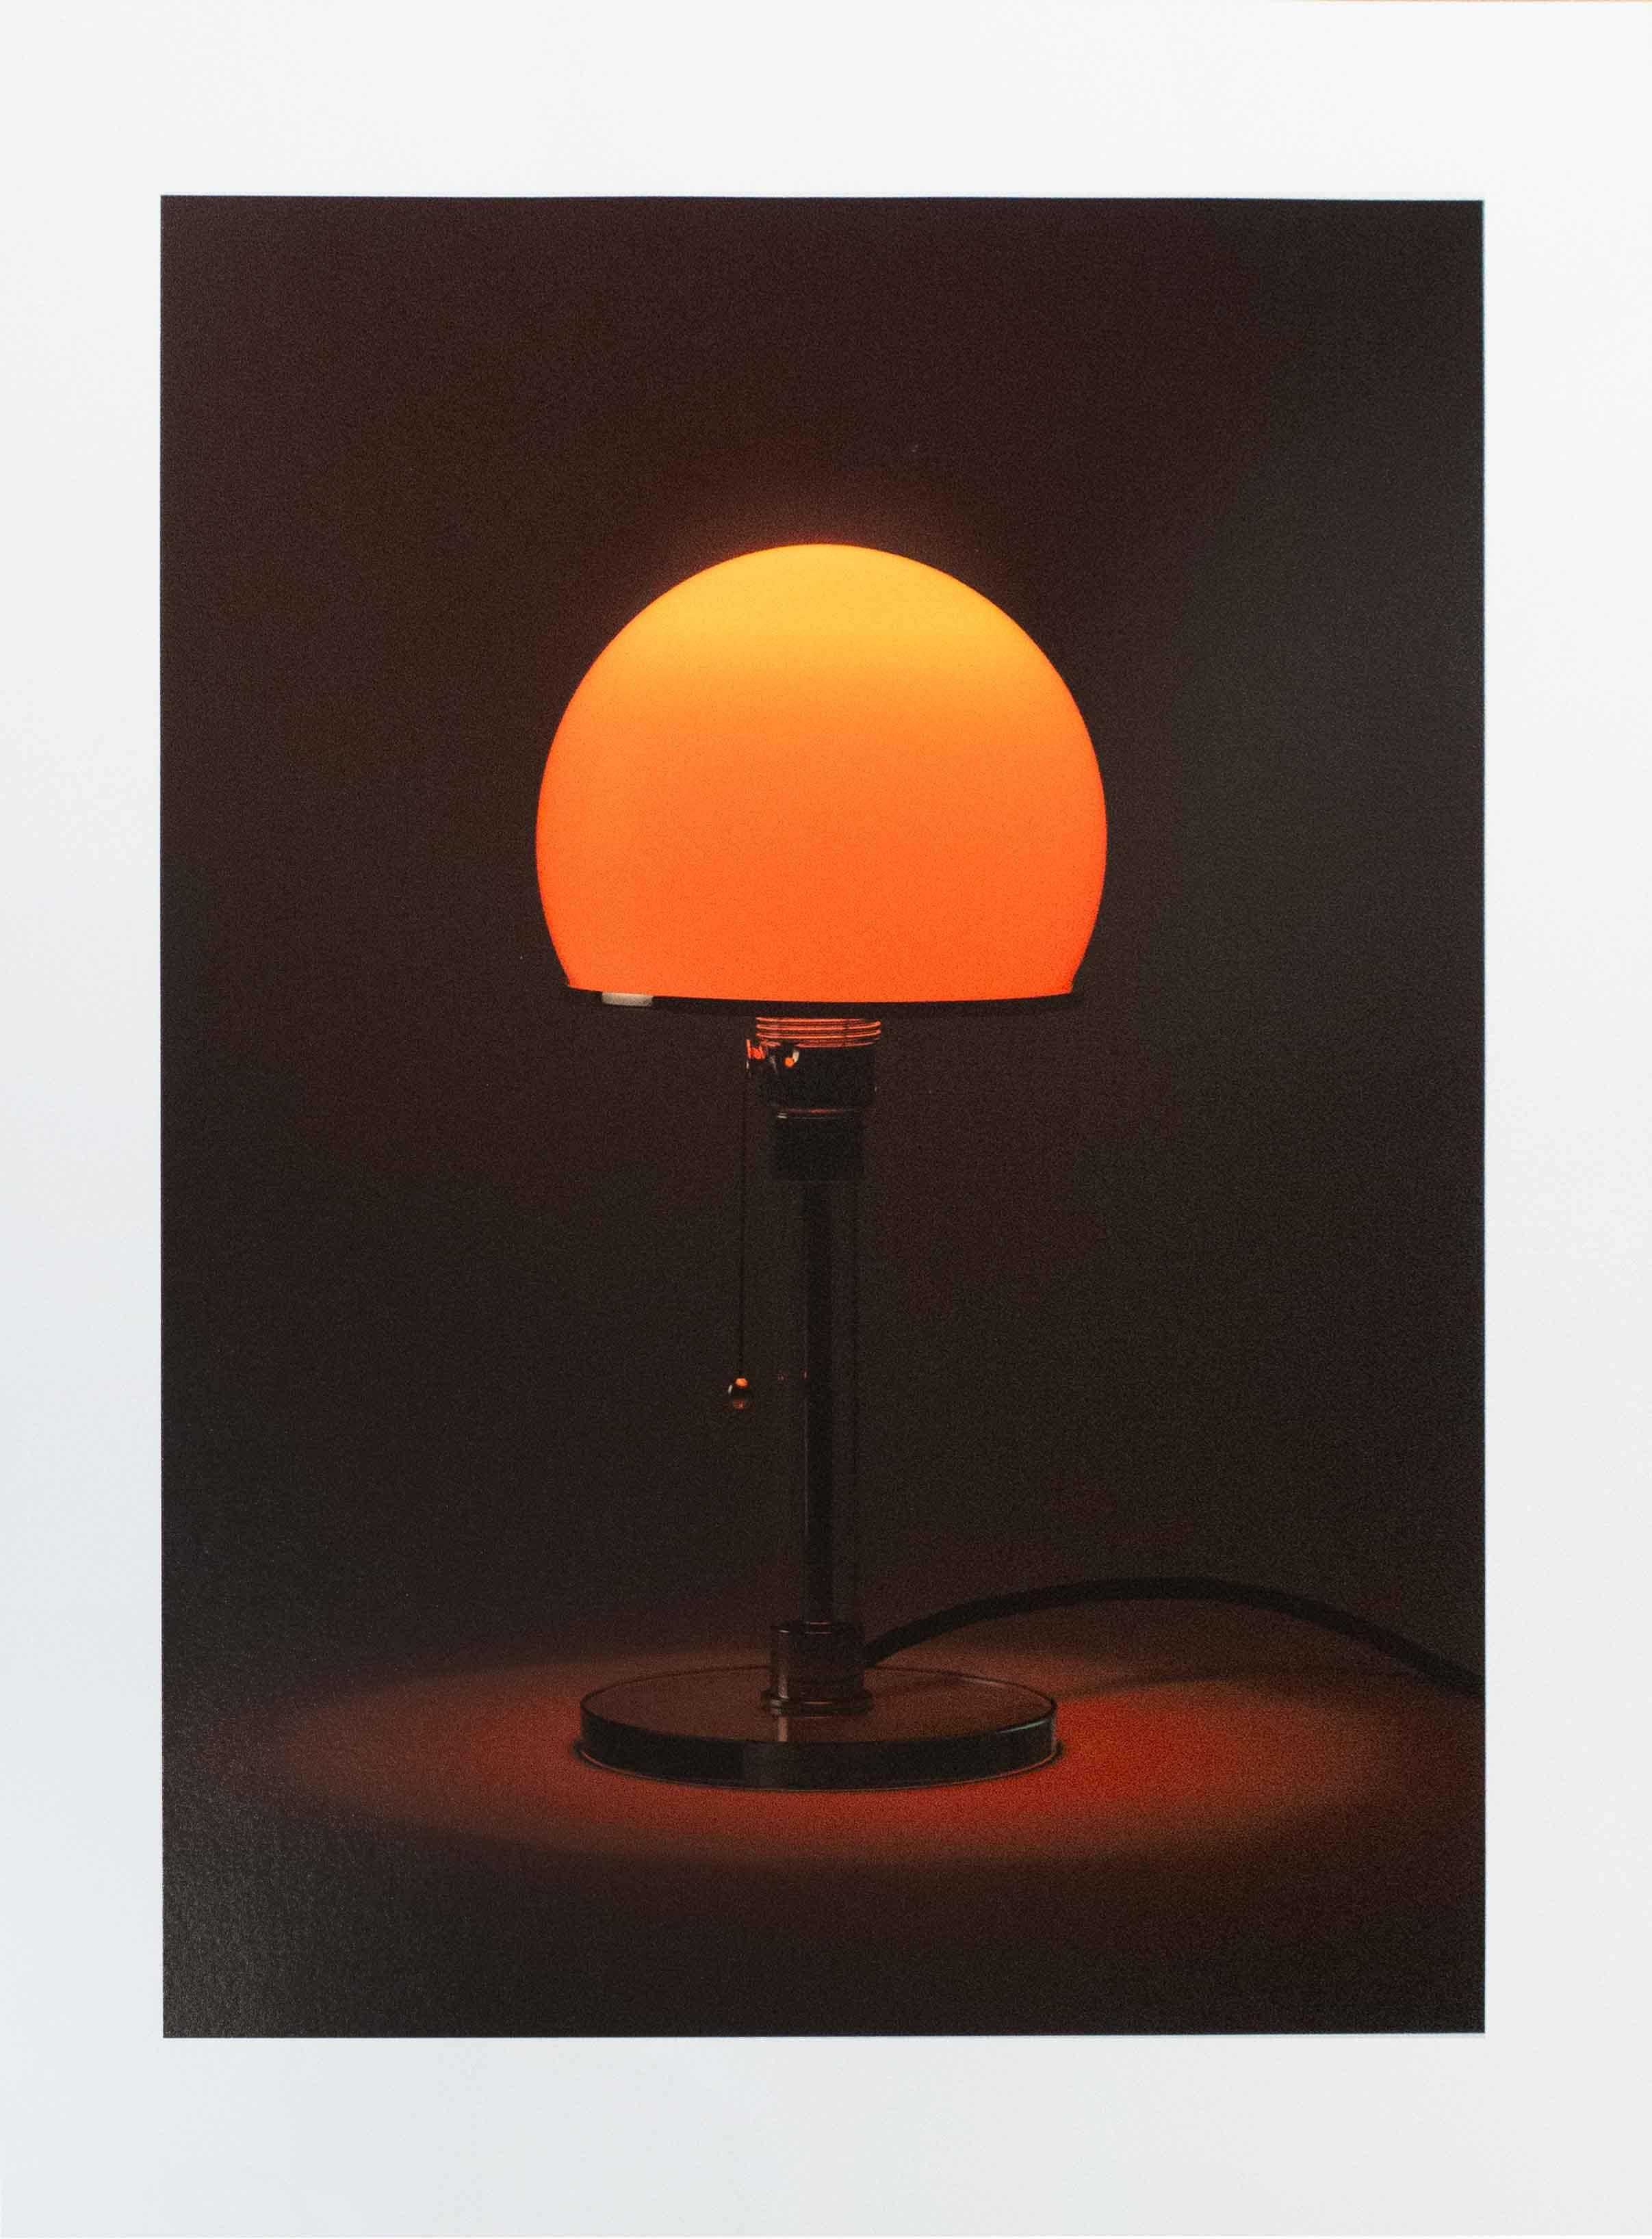 Wagenfeld Sunsets I-VI, 376 B3, 2019, Lampada, Bauhaus - Photograph by Jonathan Monk